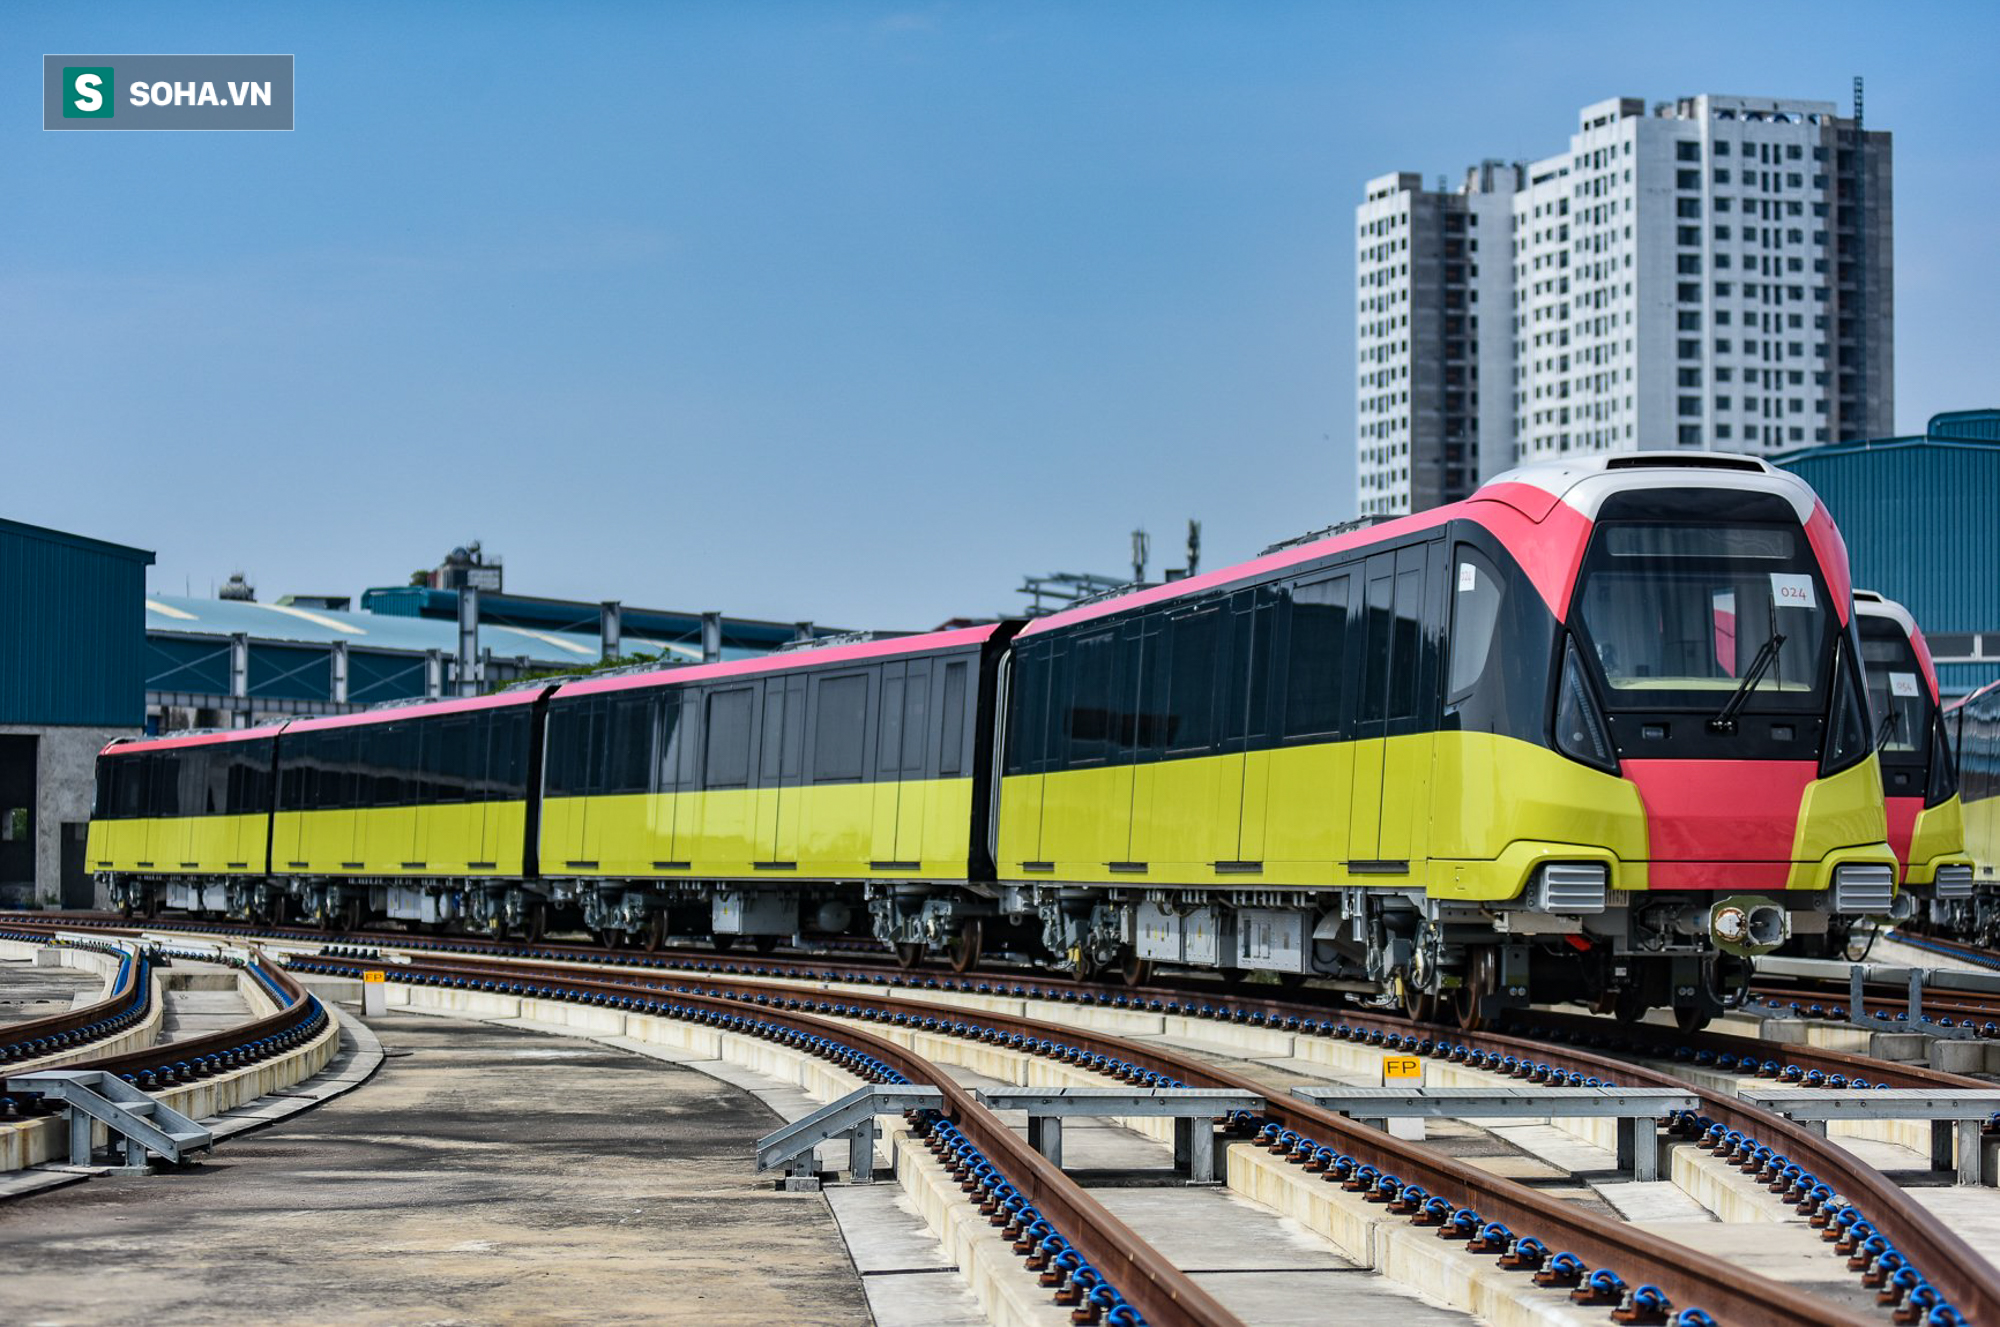 Xây trước tuyến Cát Linh-Hà Đông 1 năm, dự án Metro Nhổn-Ga Hà Nội vẫn chưa xong mặt bằng - Ảnh 13.